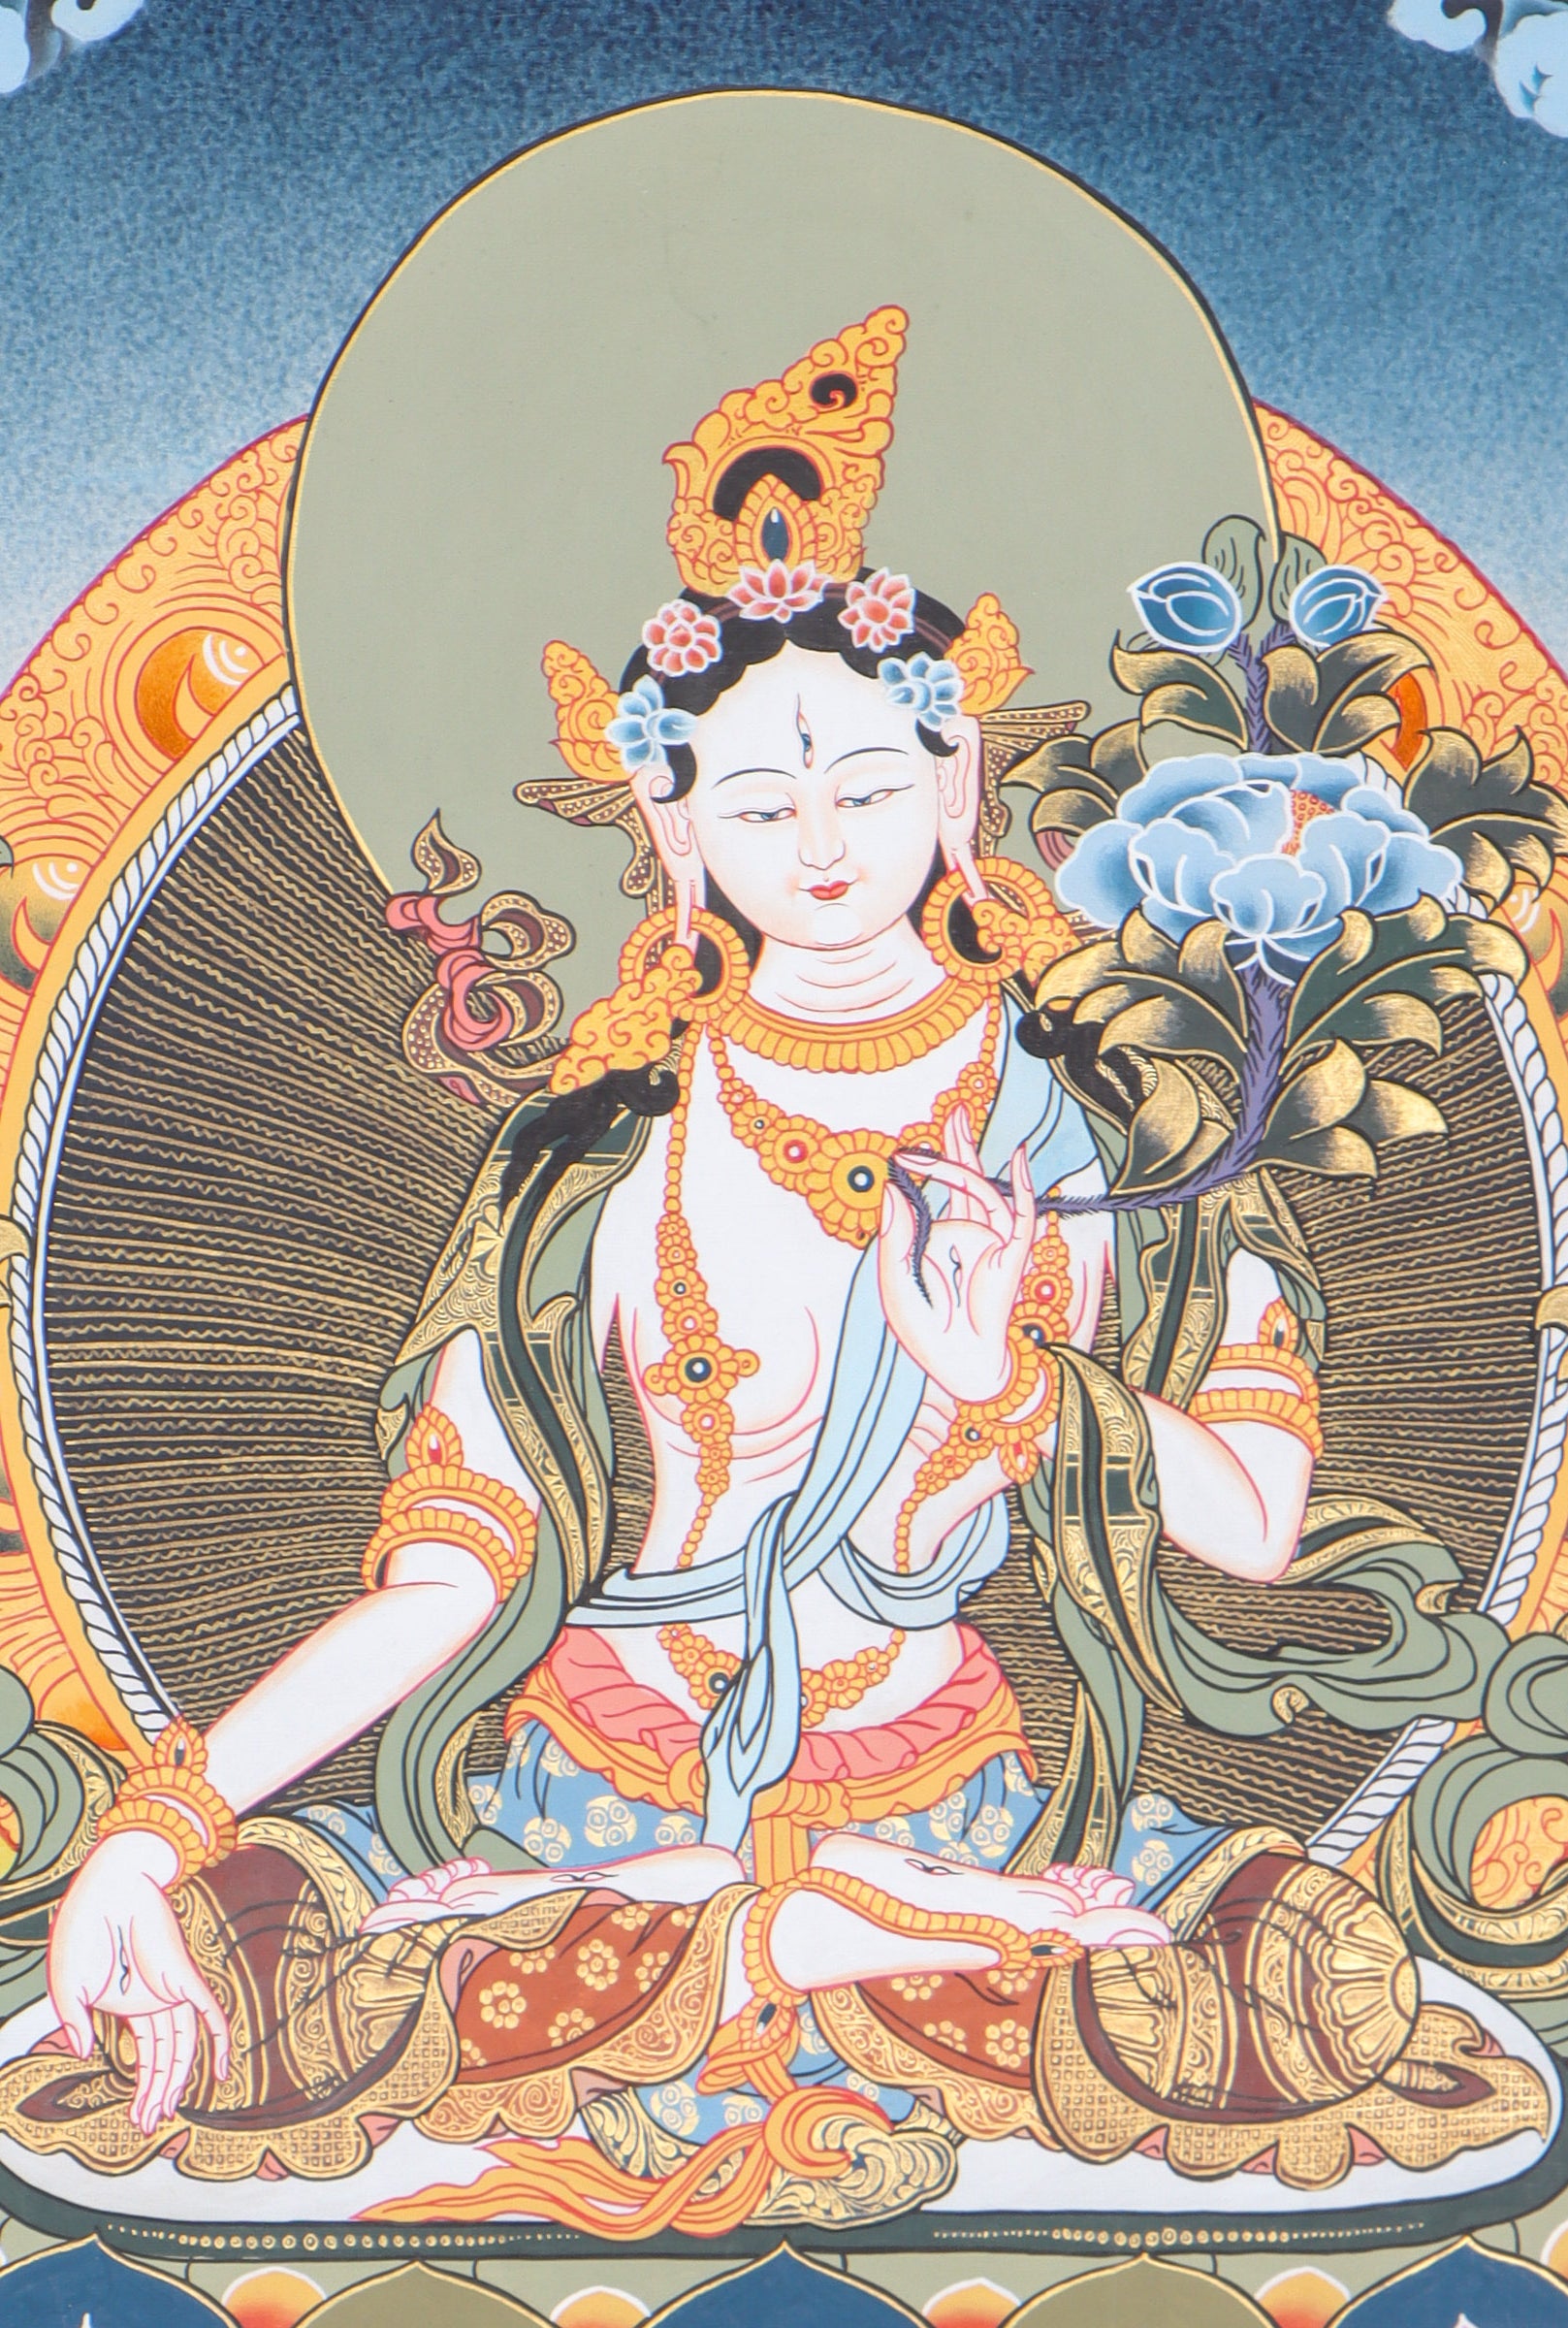  White Tara Thangka for spirituality.